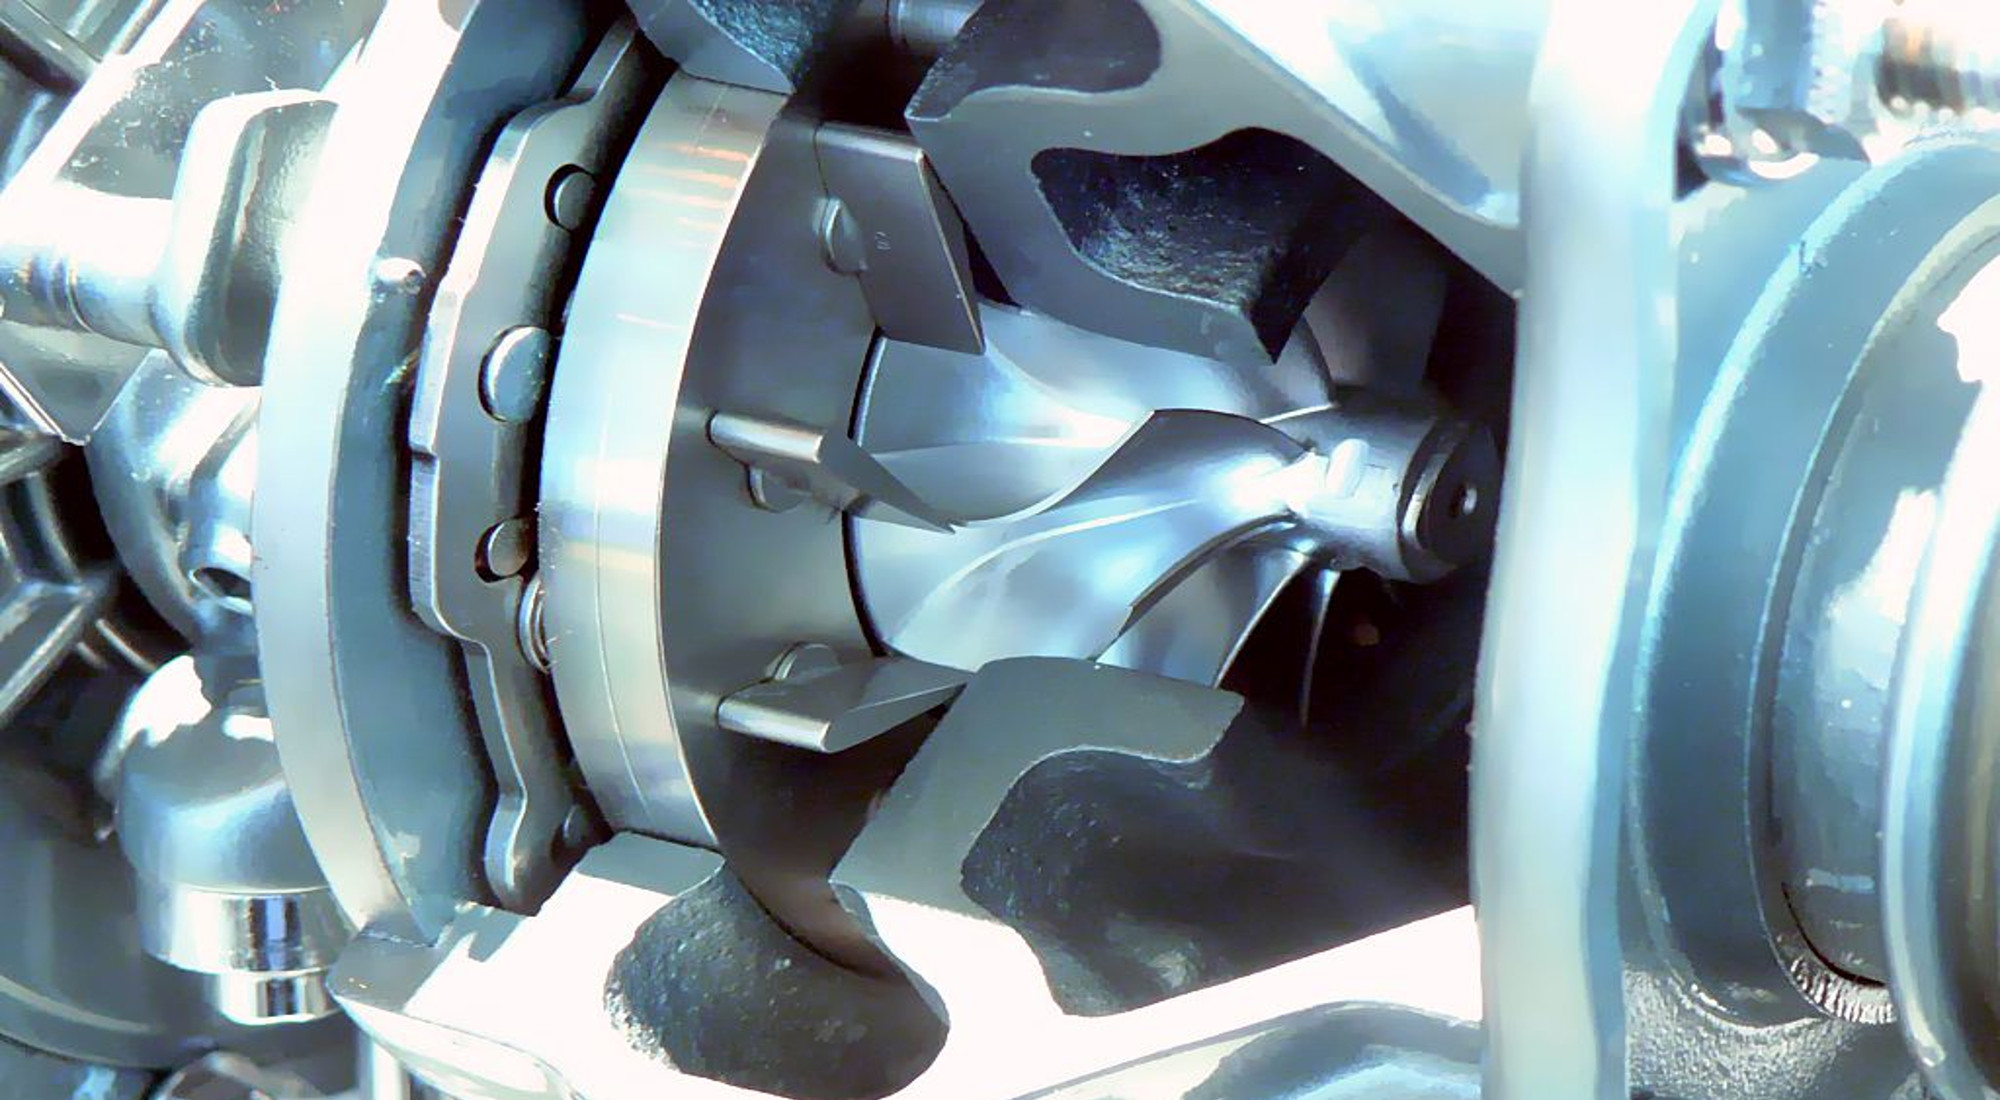 rettifiche turbine turbo compressori motori siena toscana